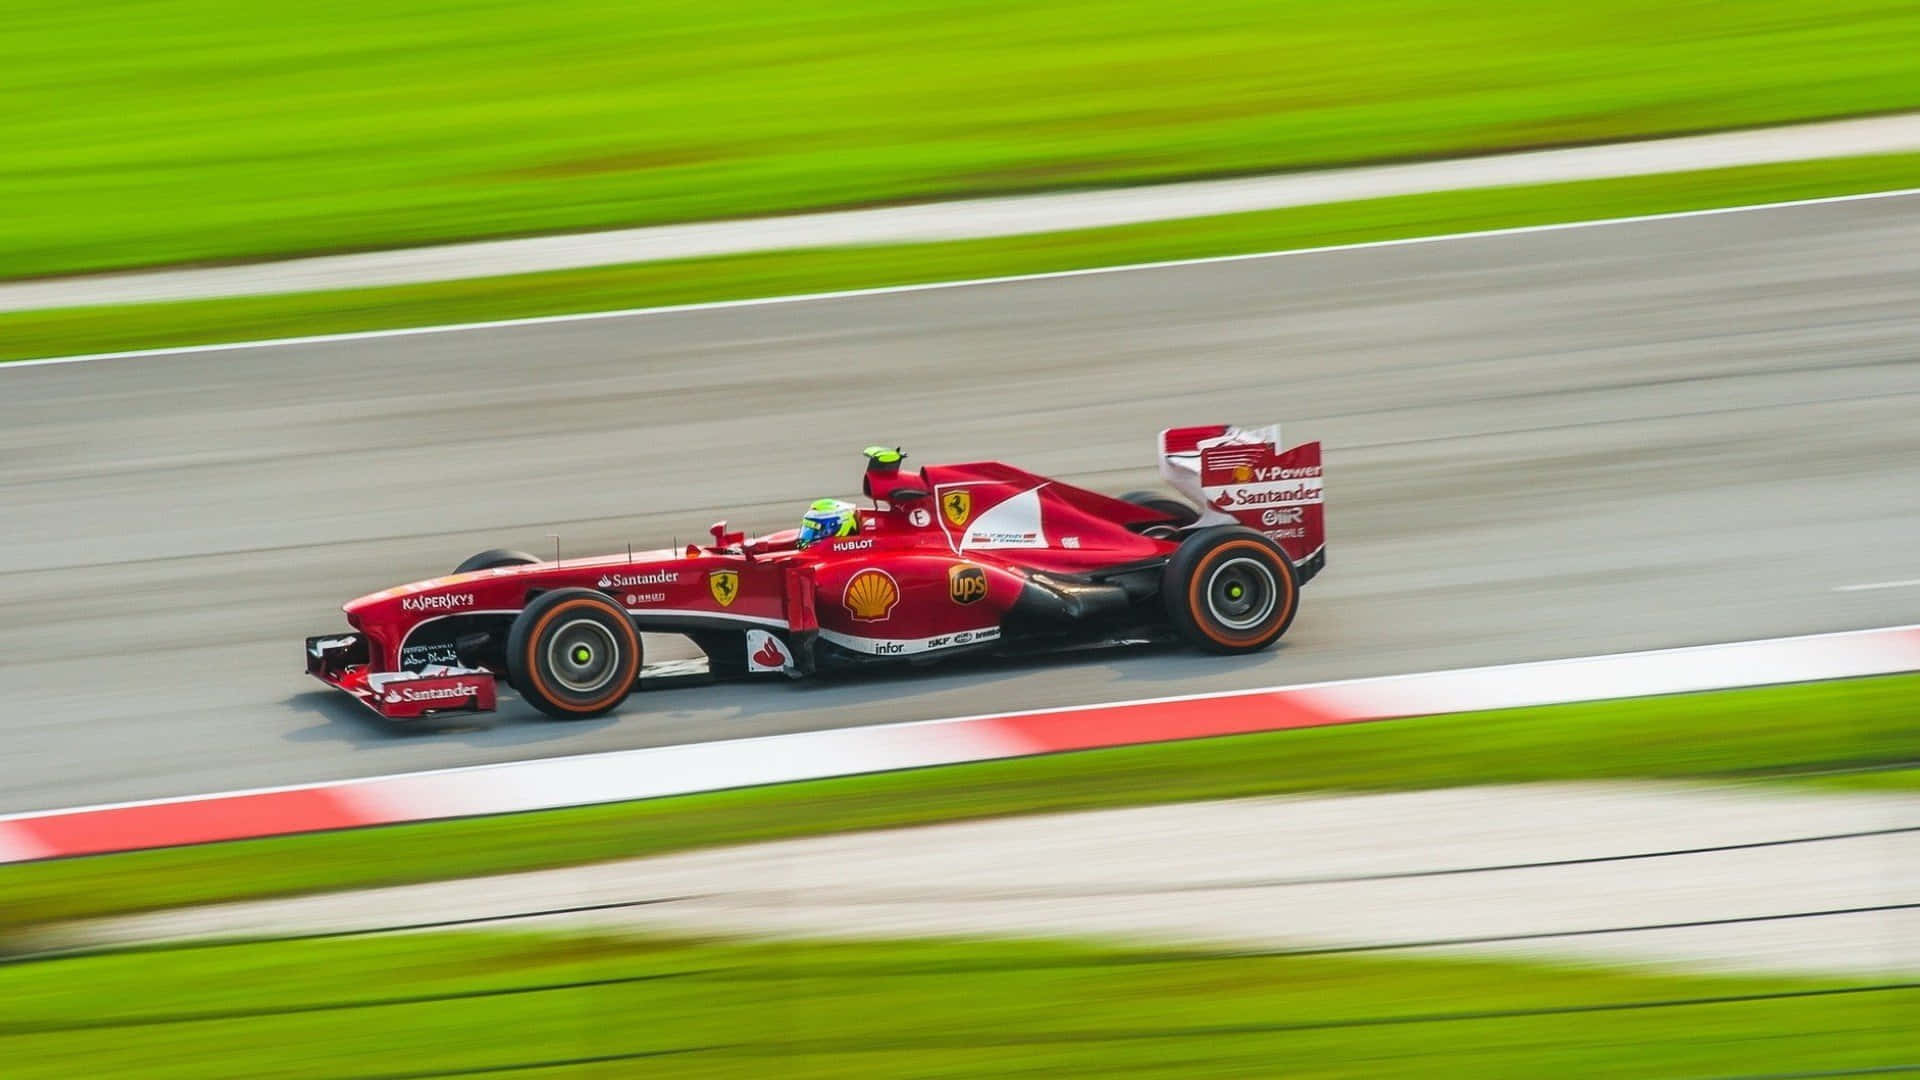 Cochede Fórmula 1 De Ferrari Conduciendo En Una Pista